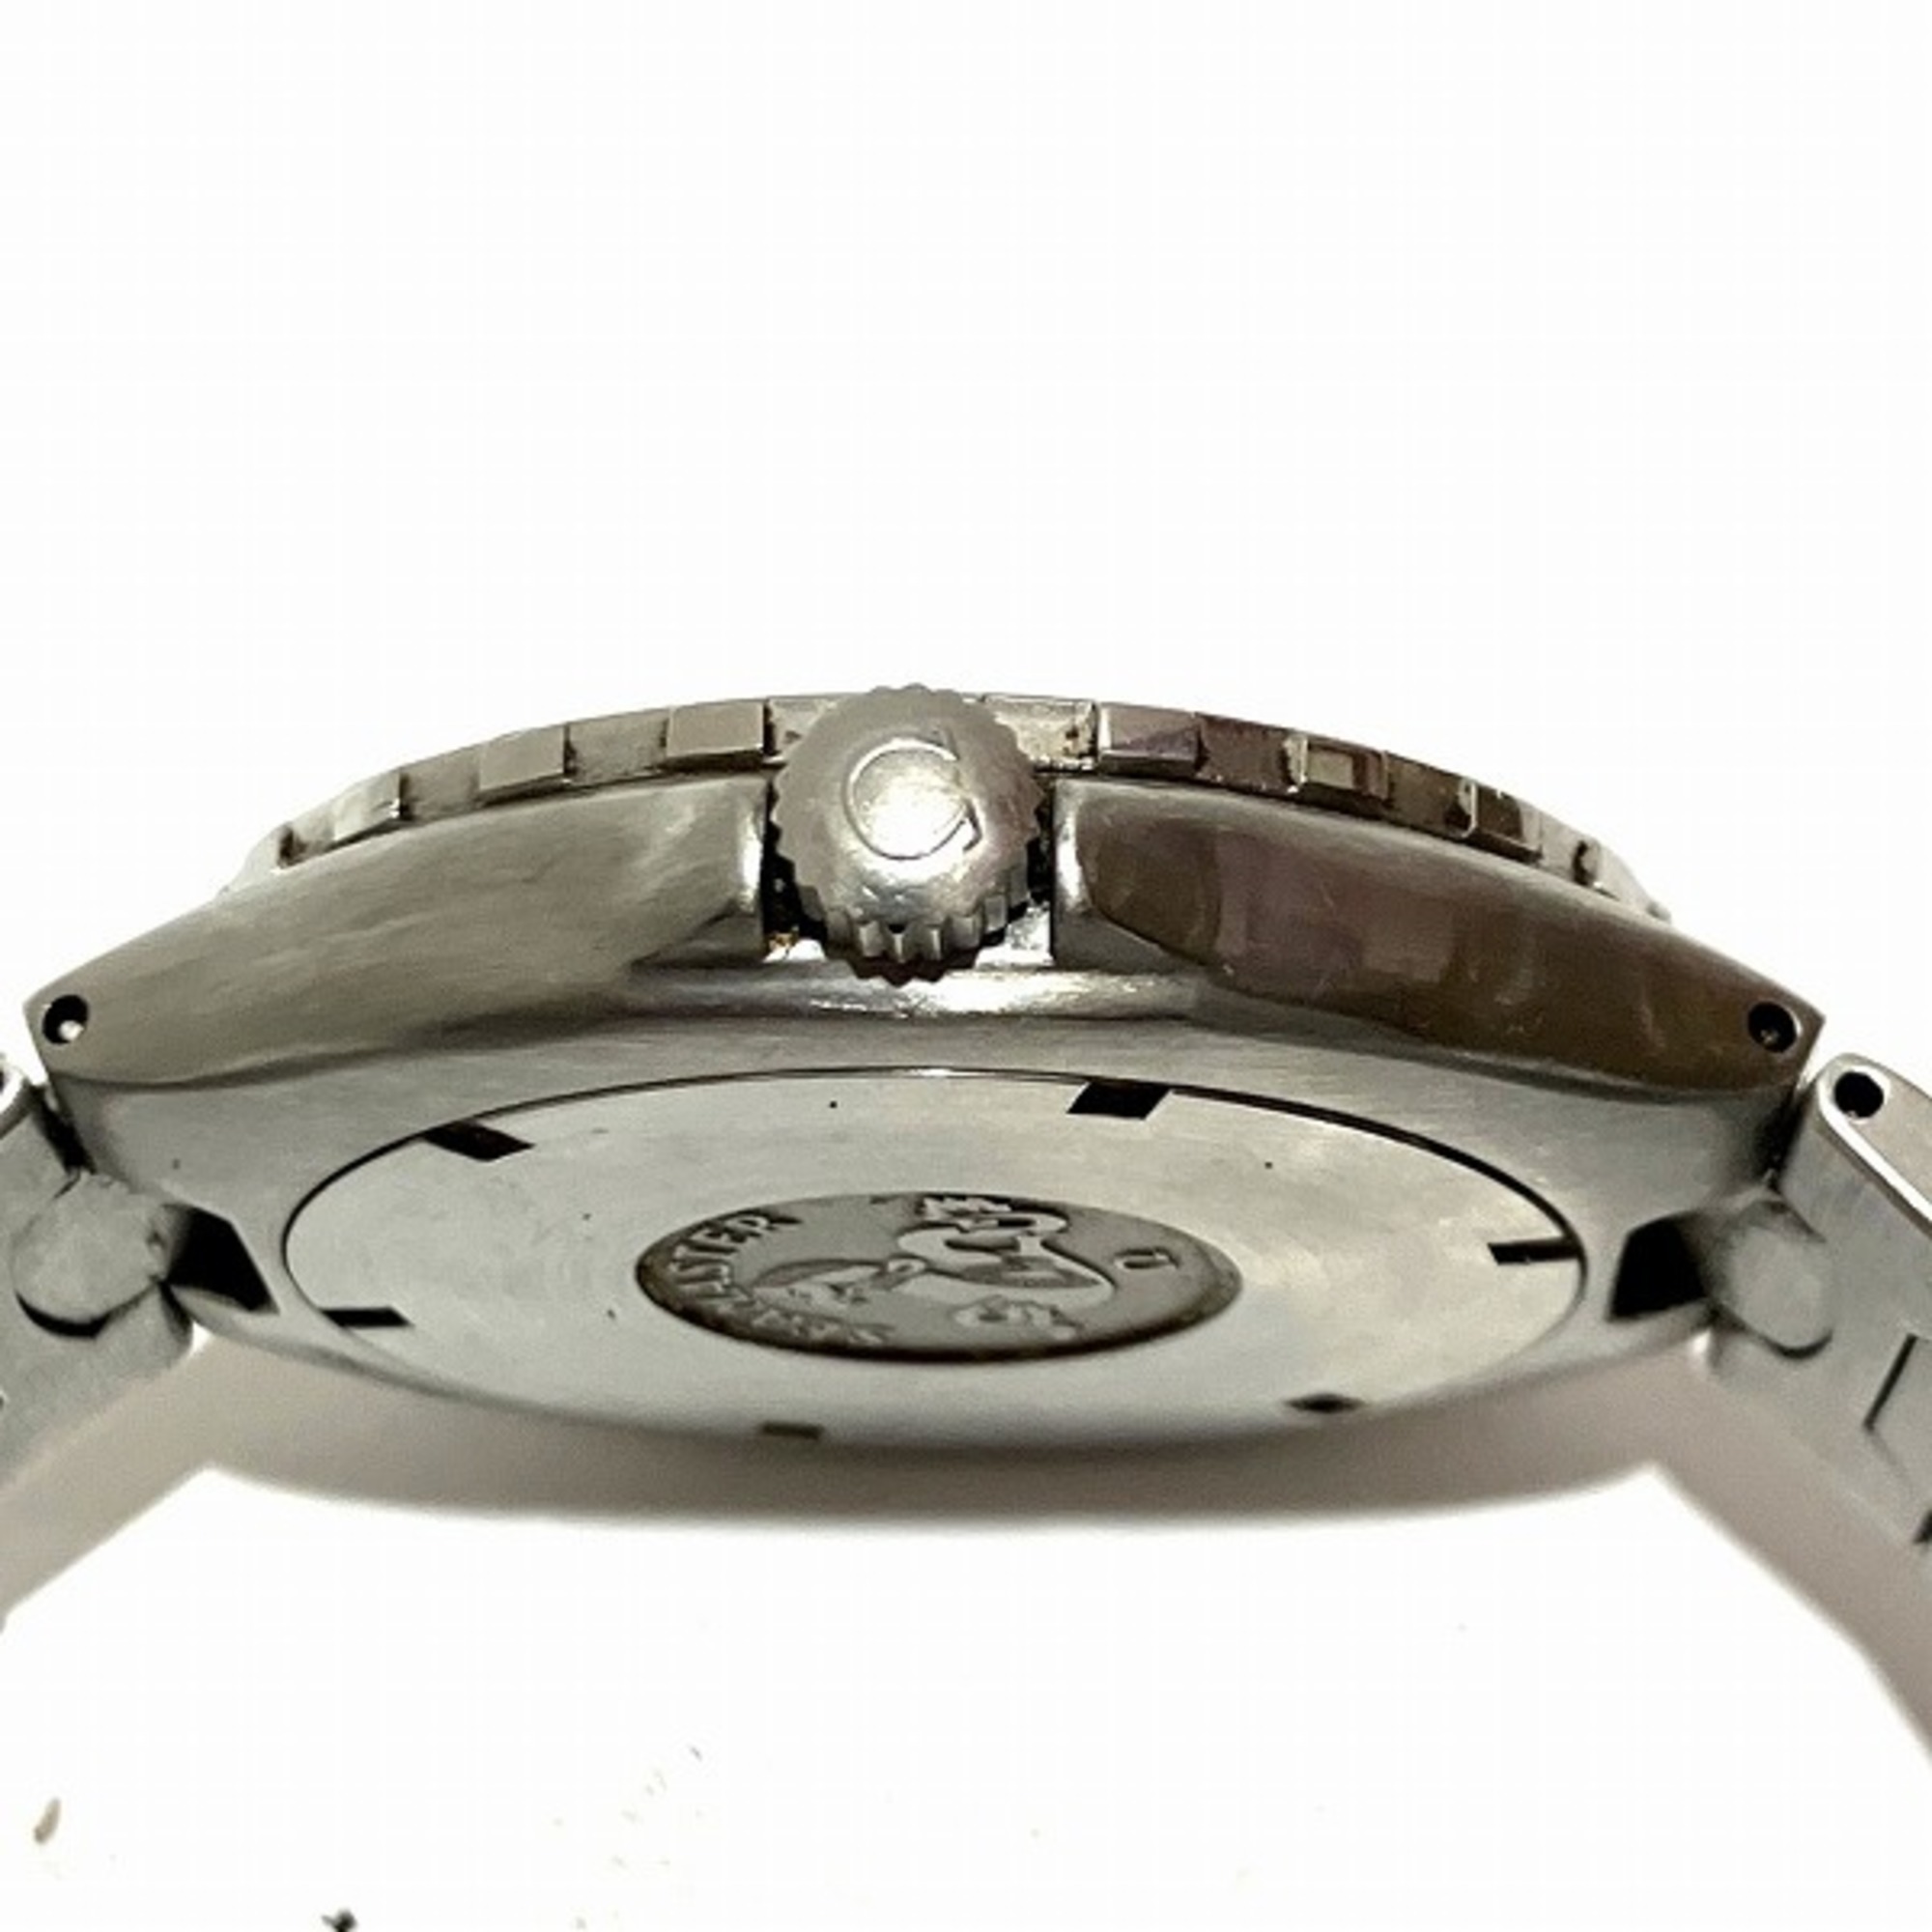 Omega Seamaster Professional 200 Quartz Watch Wristwatch for Boys